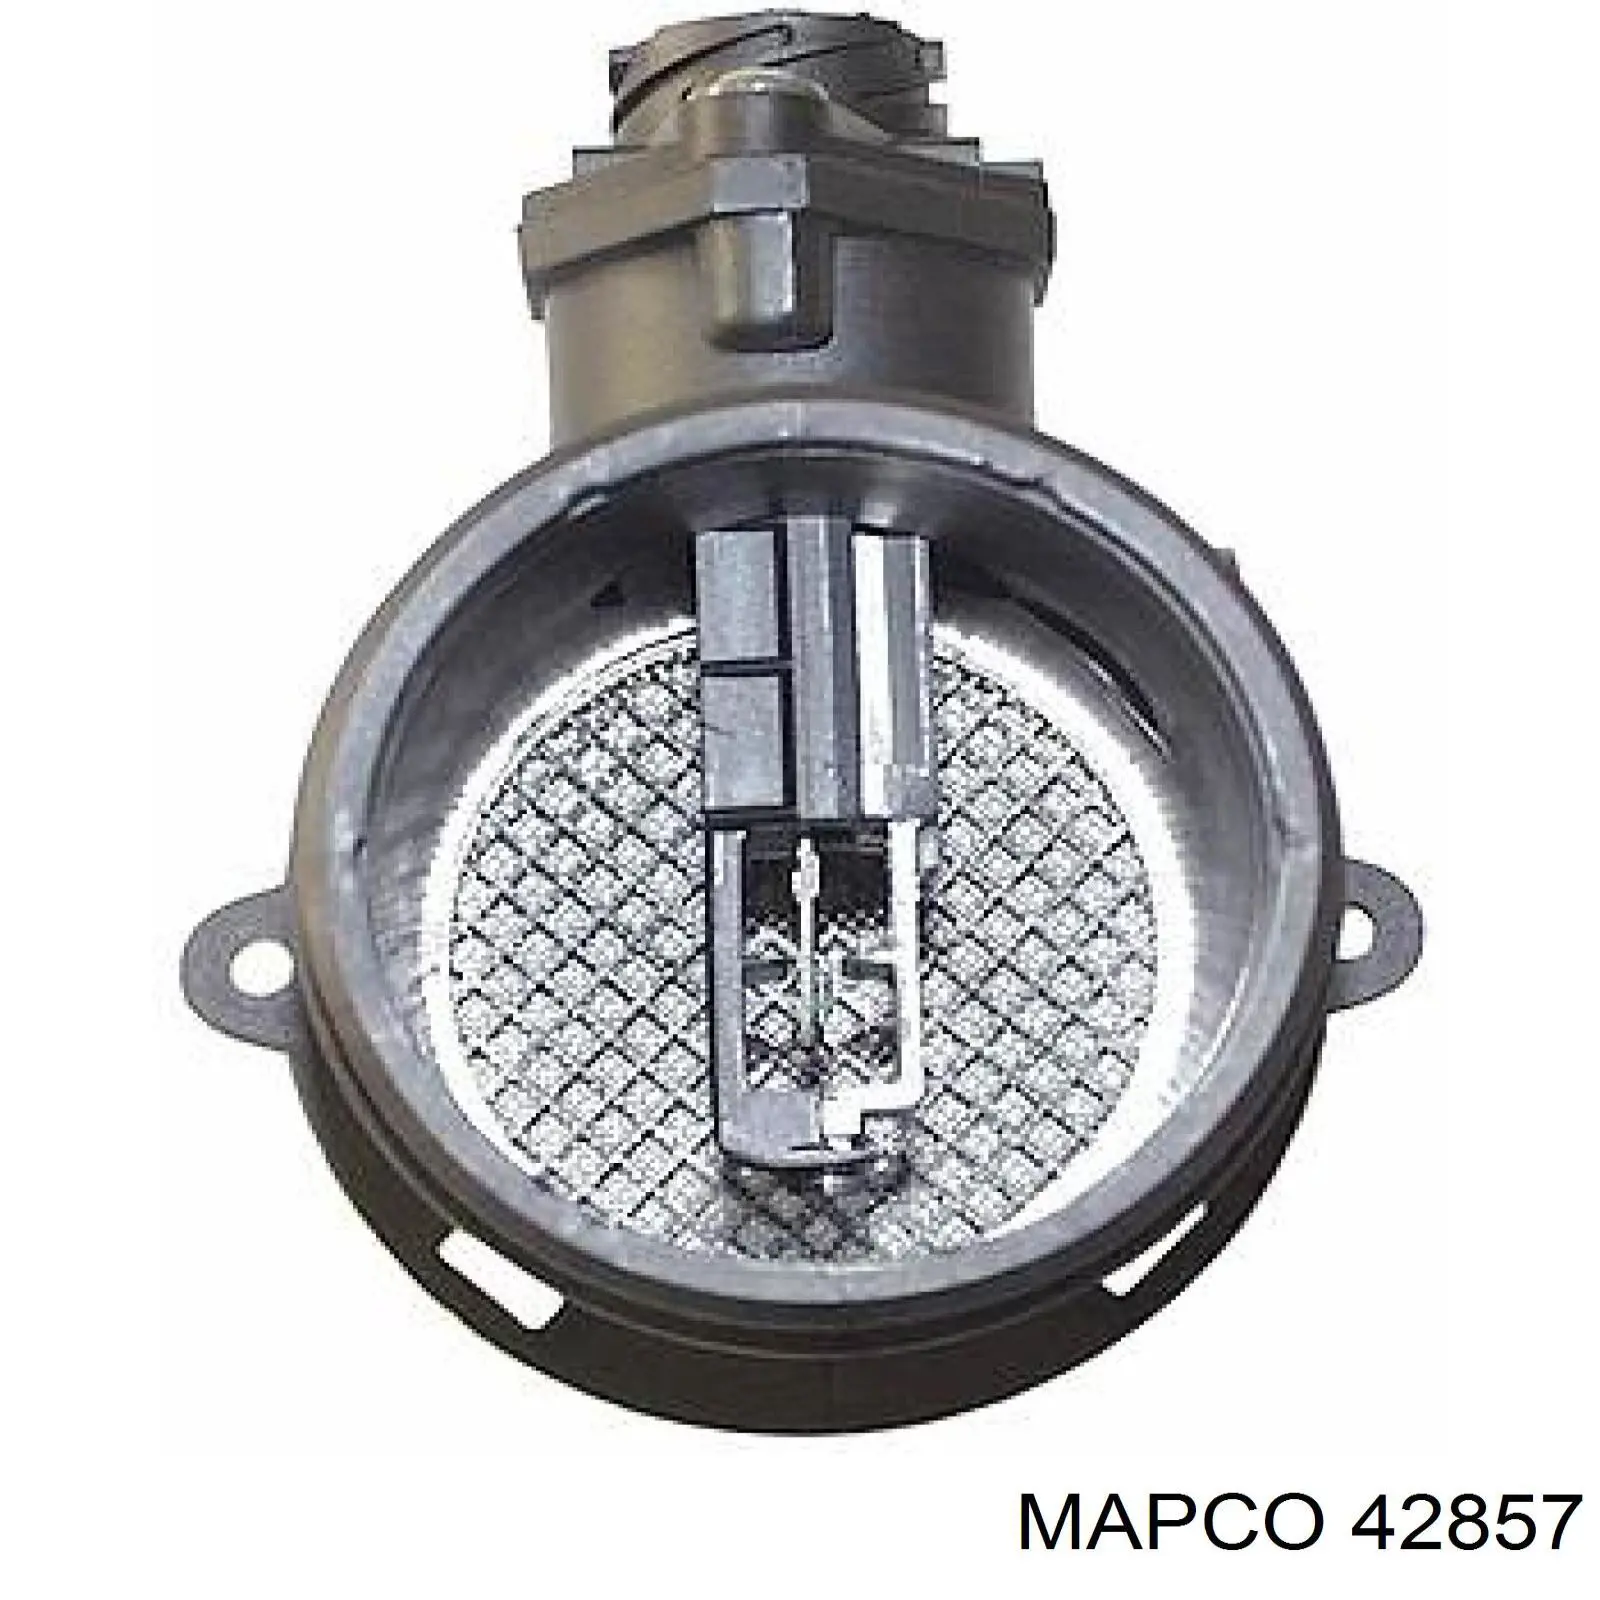 Sensor De Flujo De Aire/Medidor De Flujo (Flujo de Aire Masibo) 42857 Mapco